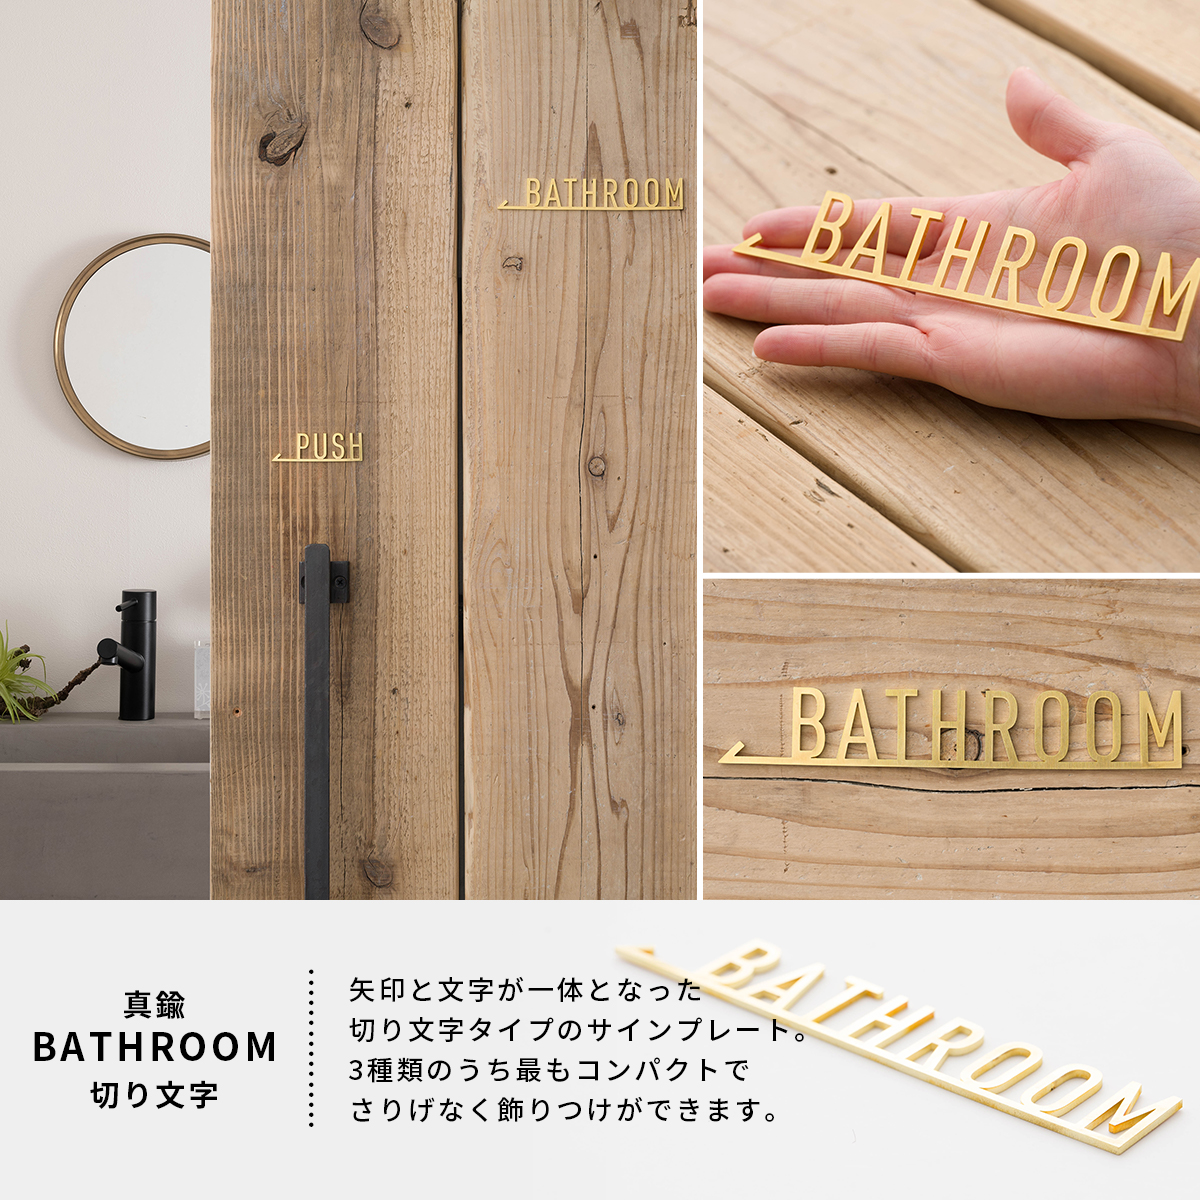 真鍮サイン・ネーム・ドアプレート BATHROOM TEKKI CRAFT・テッキクラフト